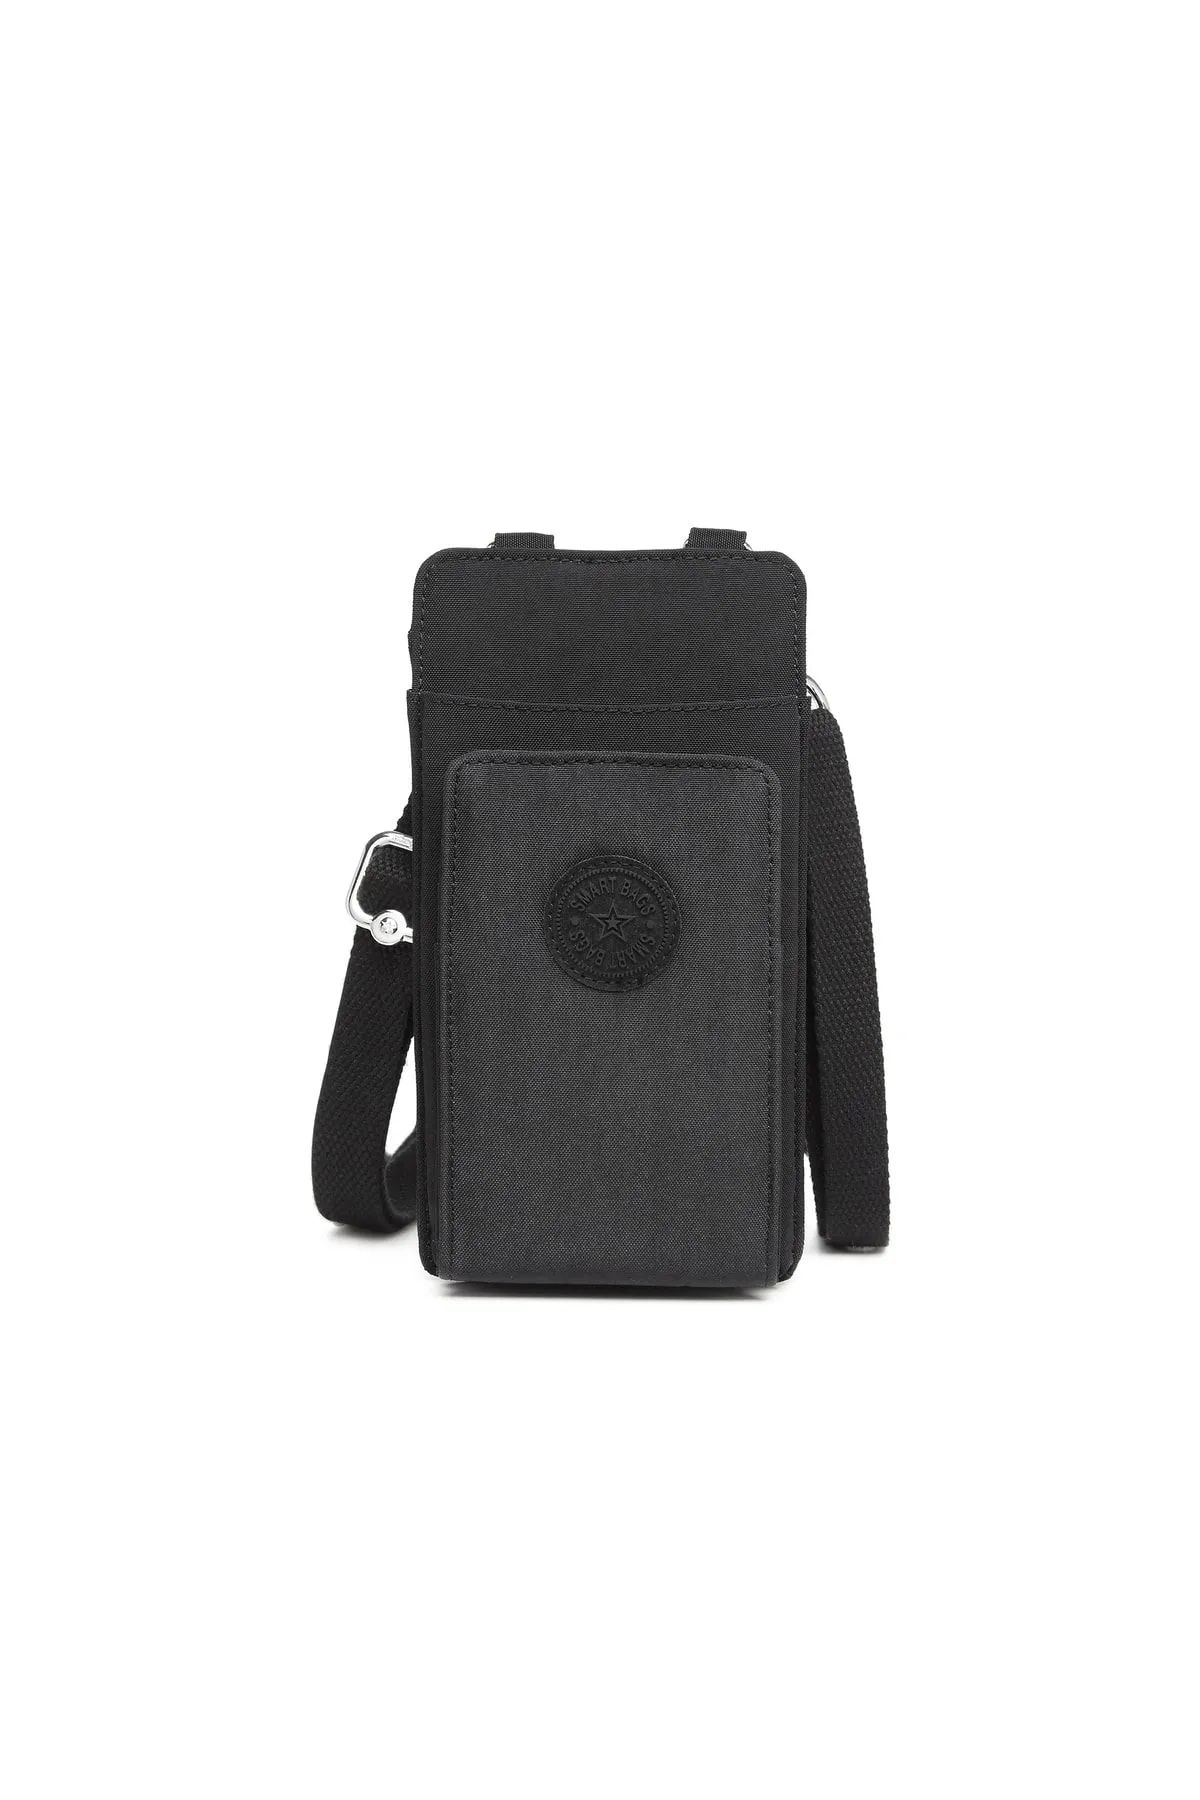 Smart Bags Su Geçirmez Krinkıl Kumaş Kadın Çapraz Askılı Telefon Bölmeli Cüzdan Çanta Siyah 3106